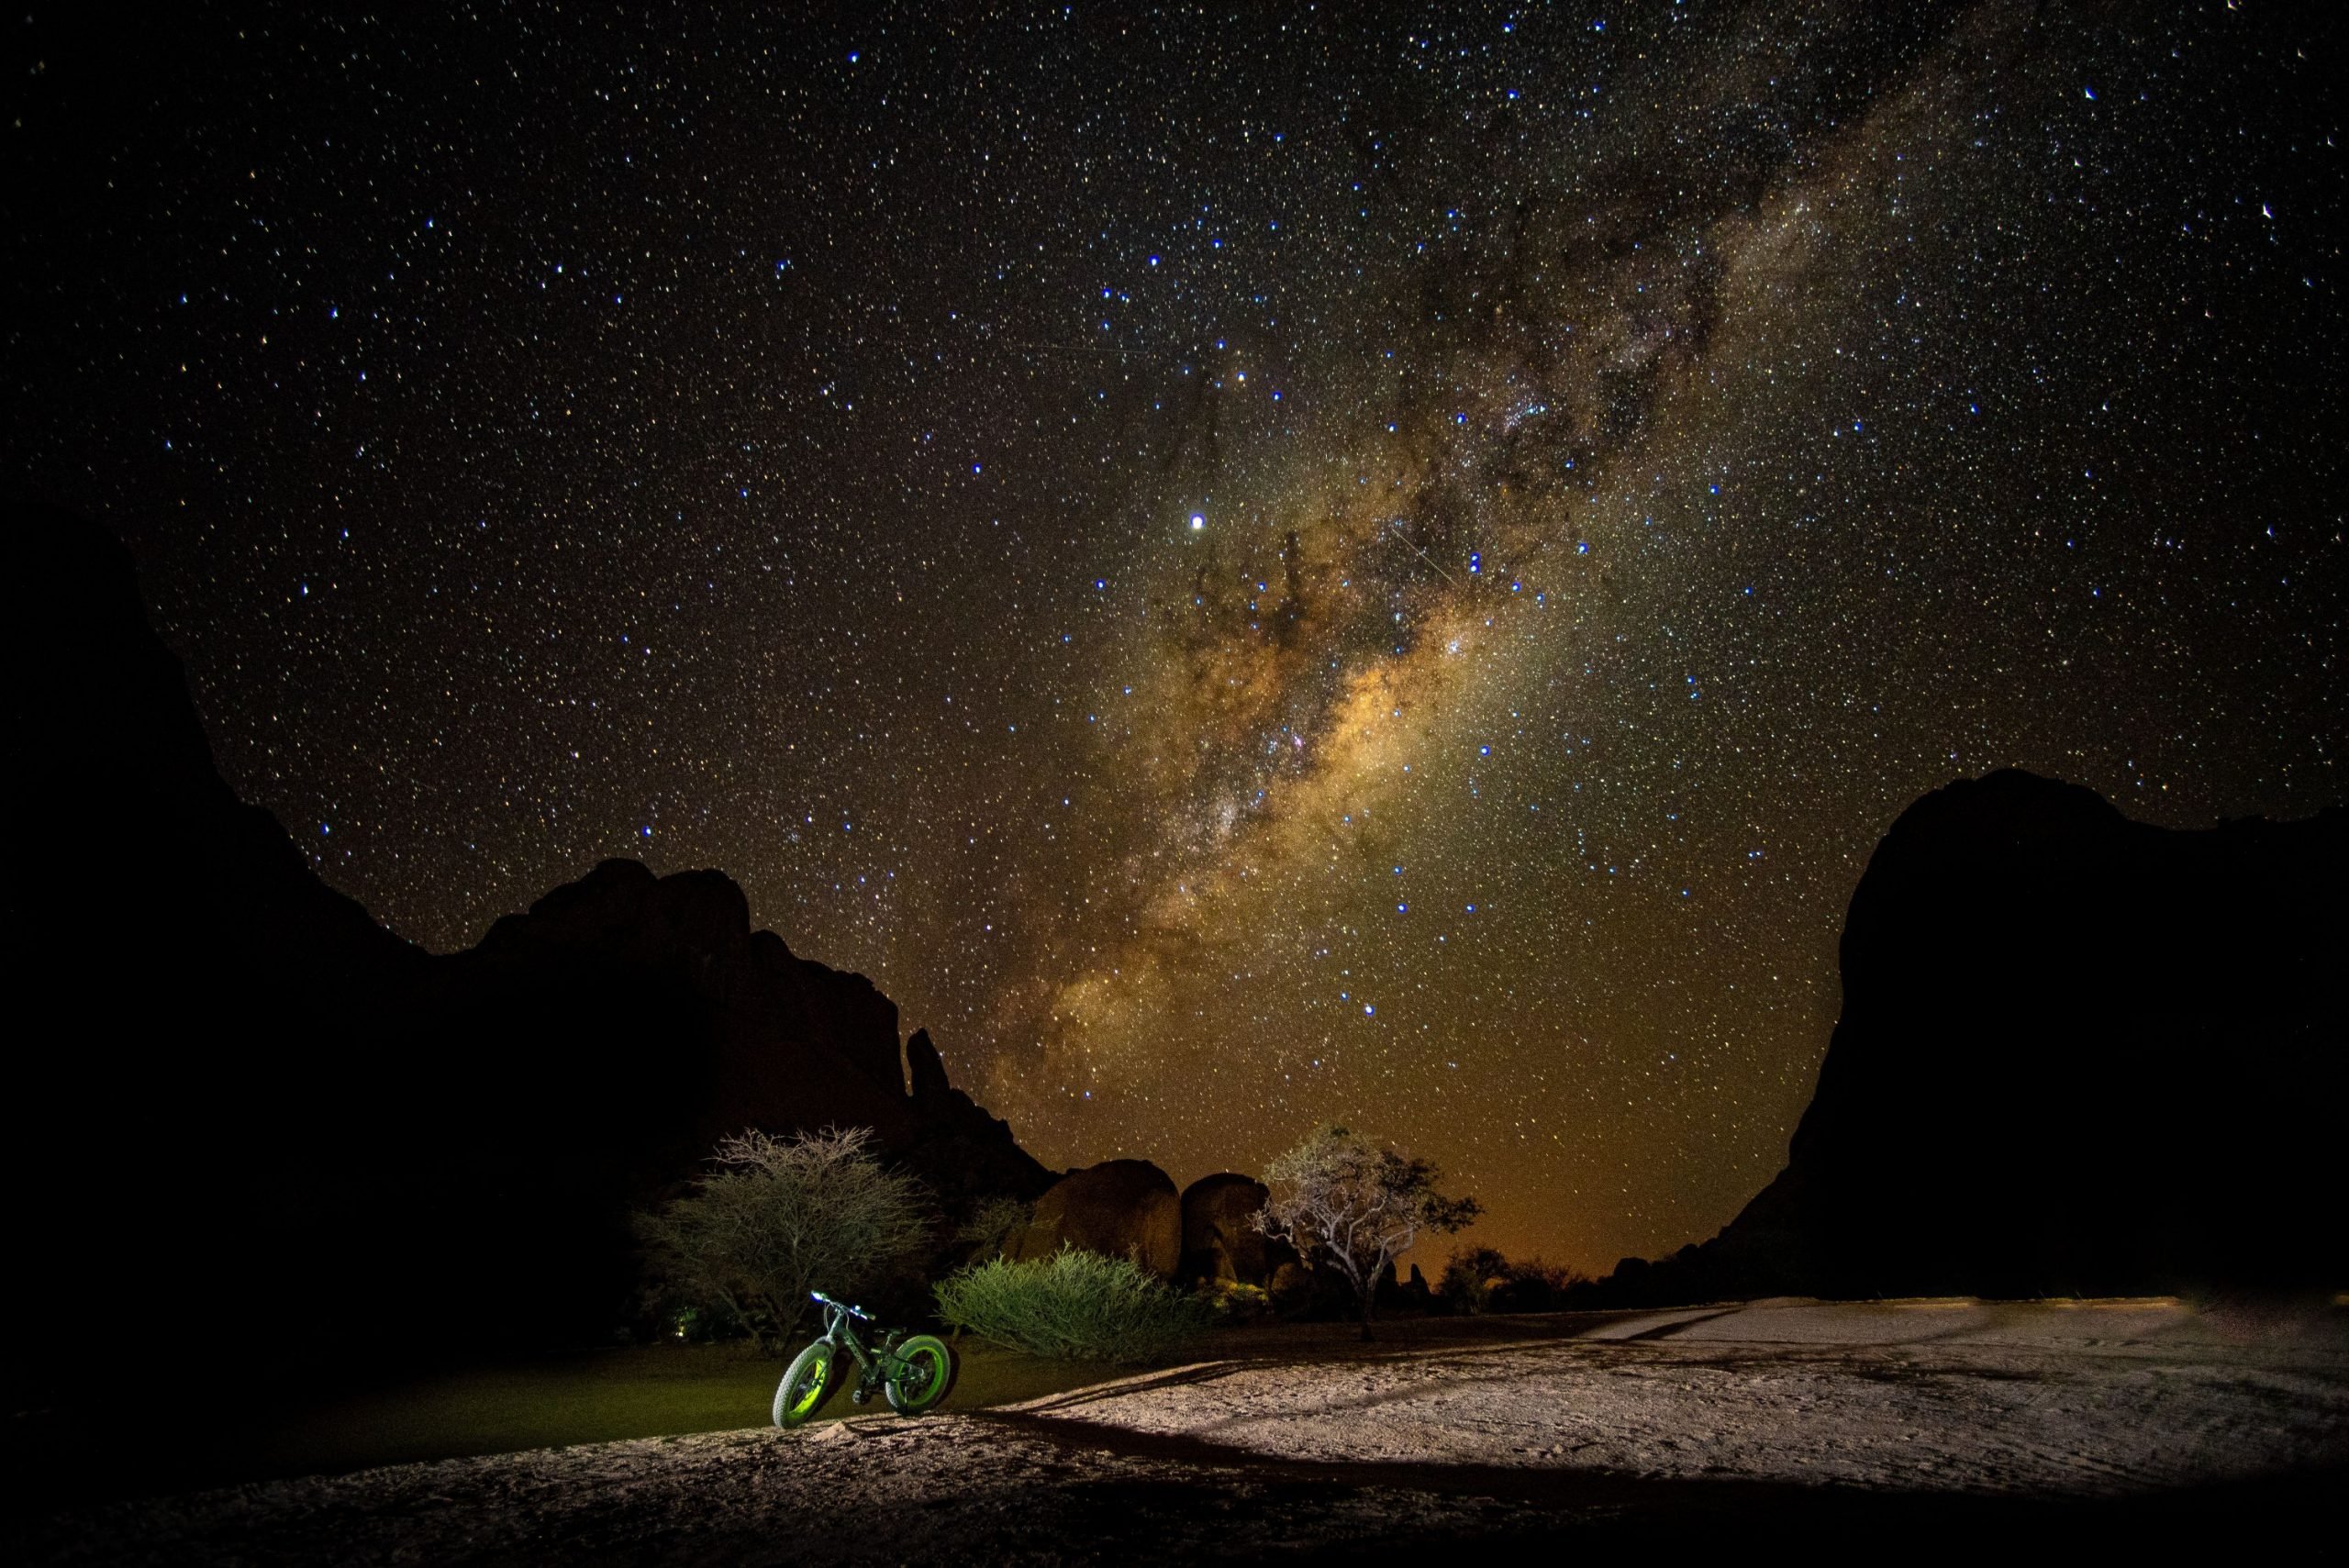 A bike in the Namib Desert, below a starry night sky.